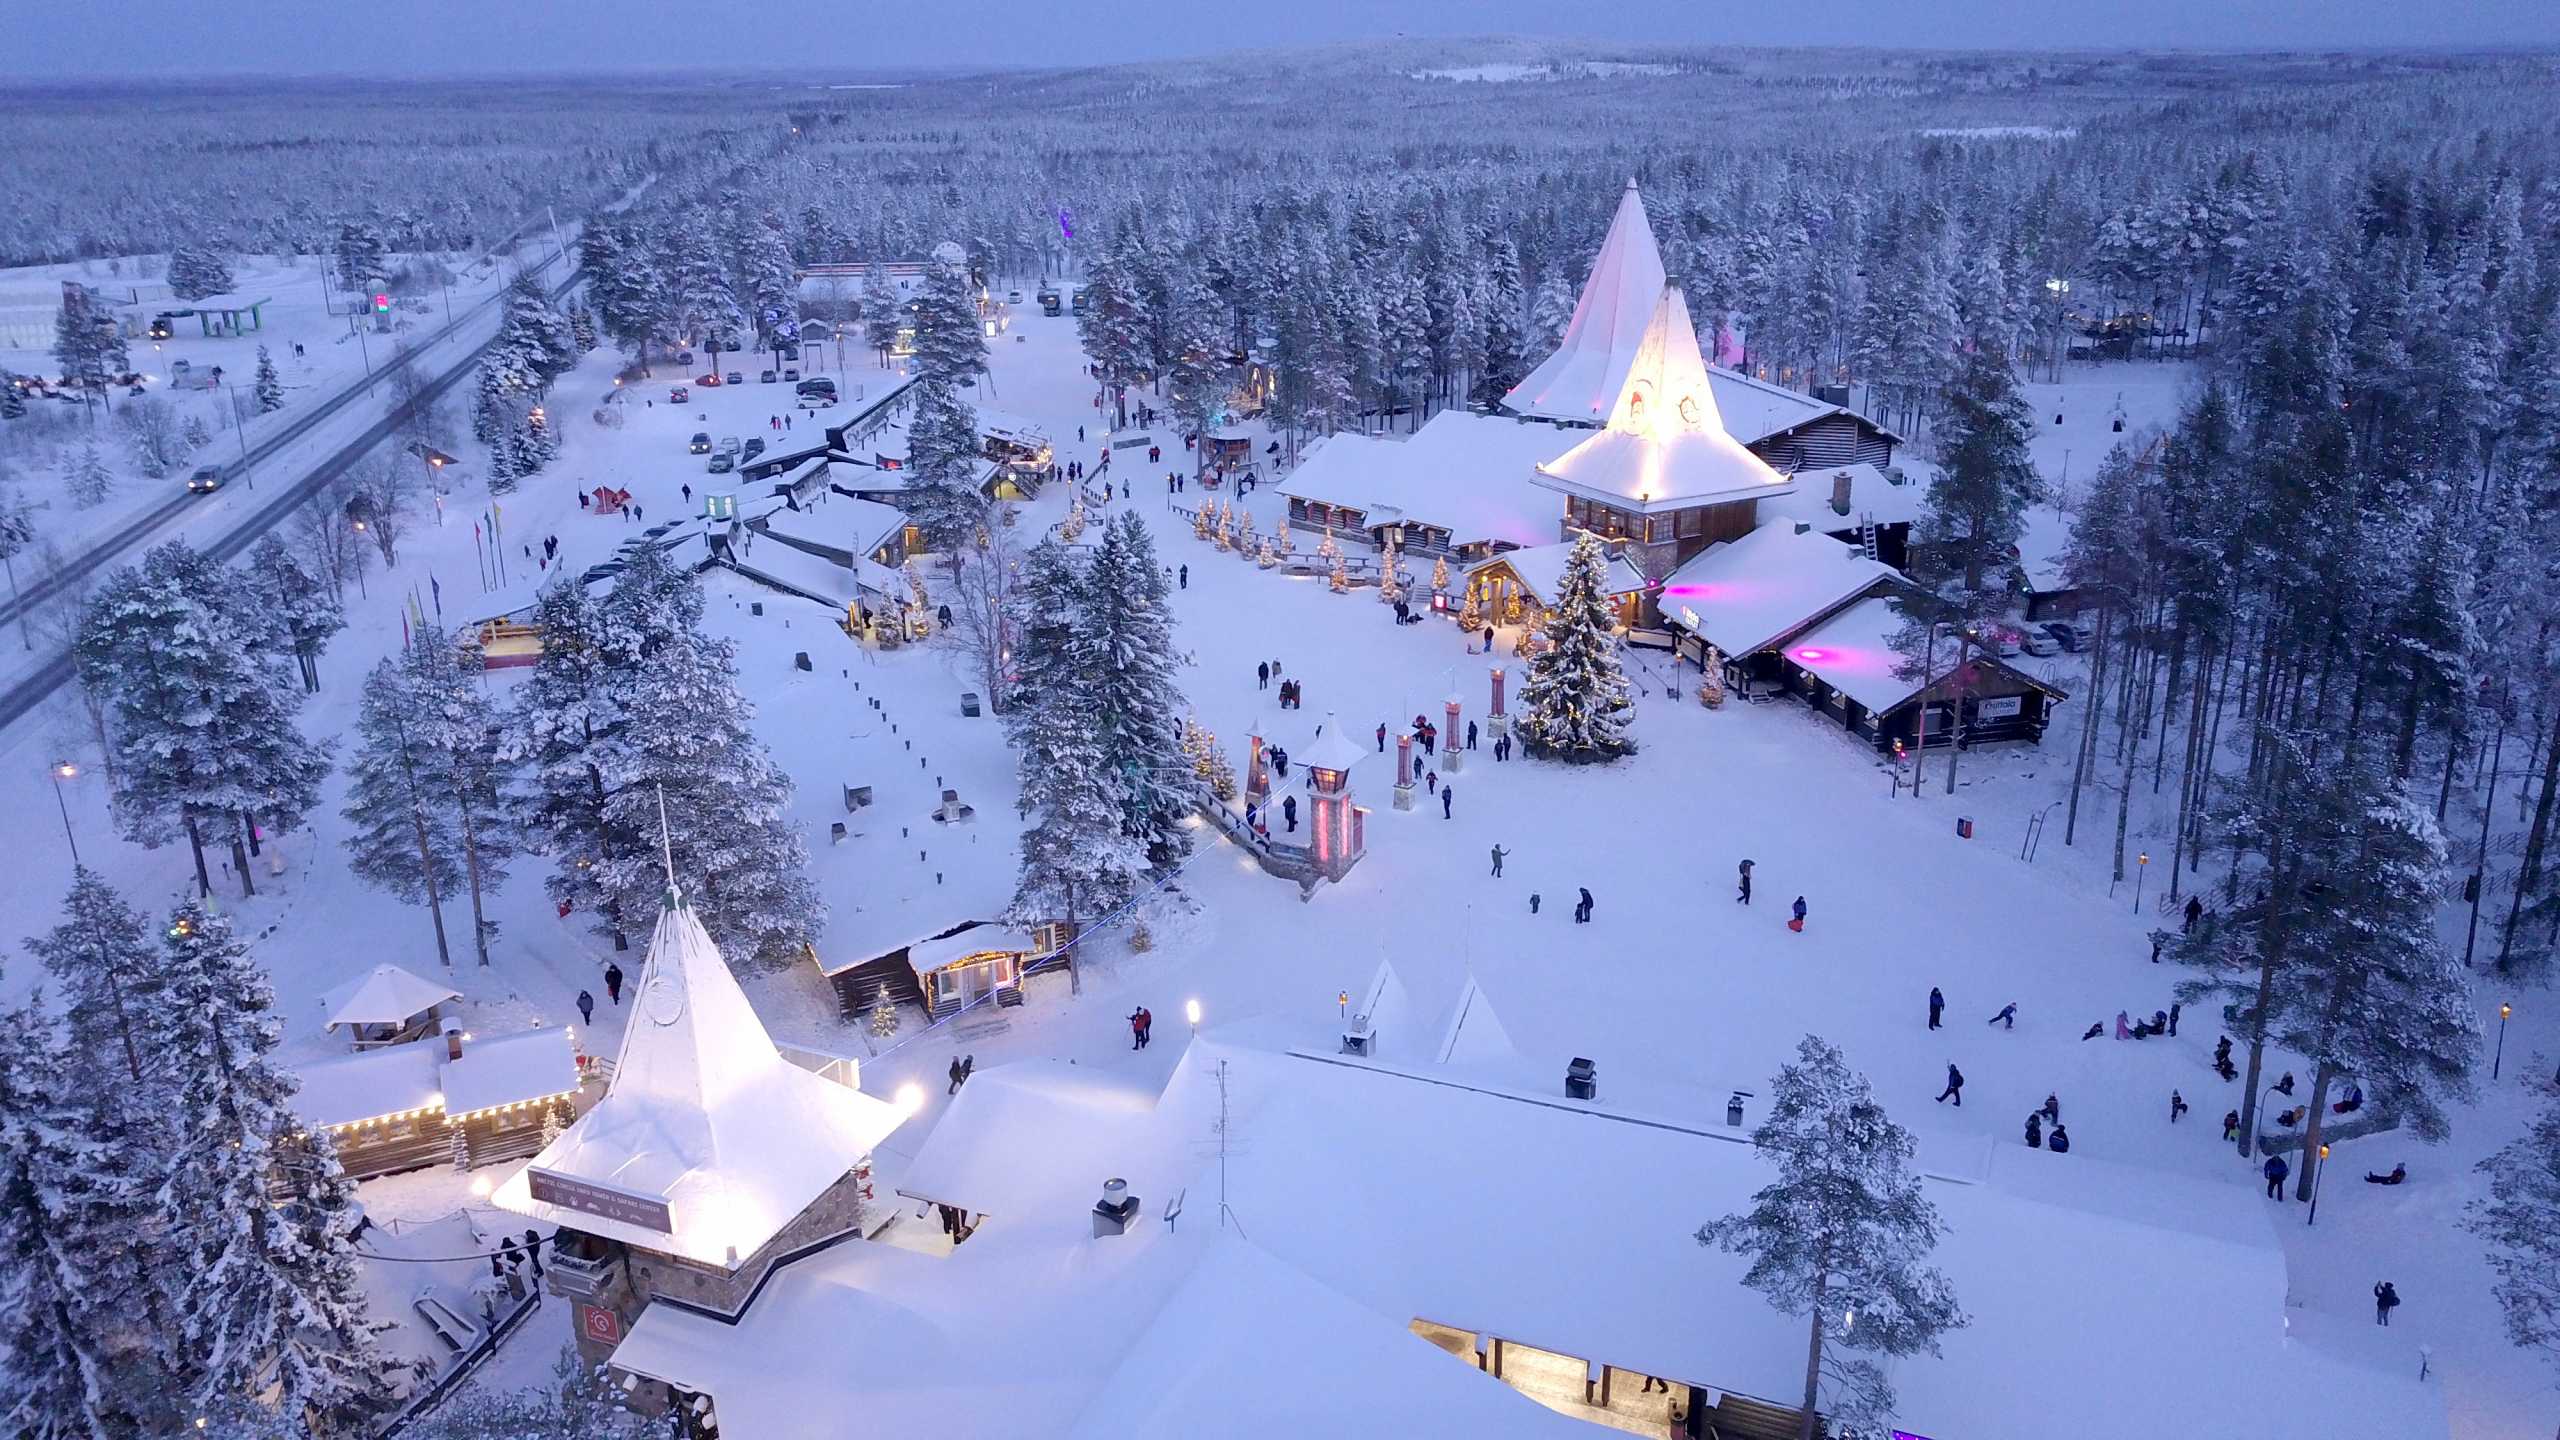 Φινλανδία: Το χωριό του Άγιου Βασίλη είναι ένα πλήρως εξοπλισμένο καταφύγιο σε περίπτωση πολέμου